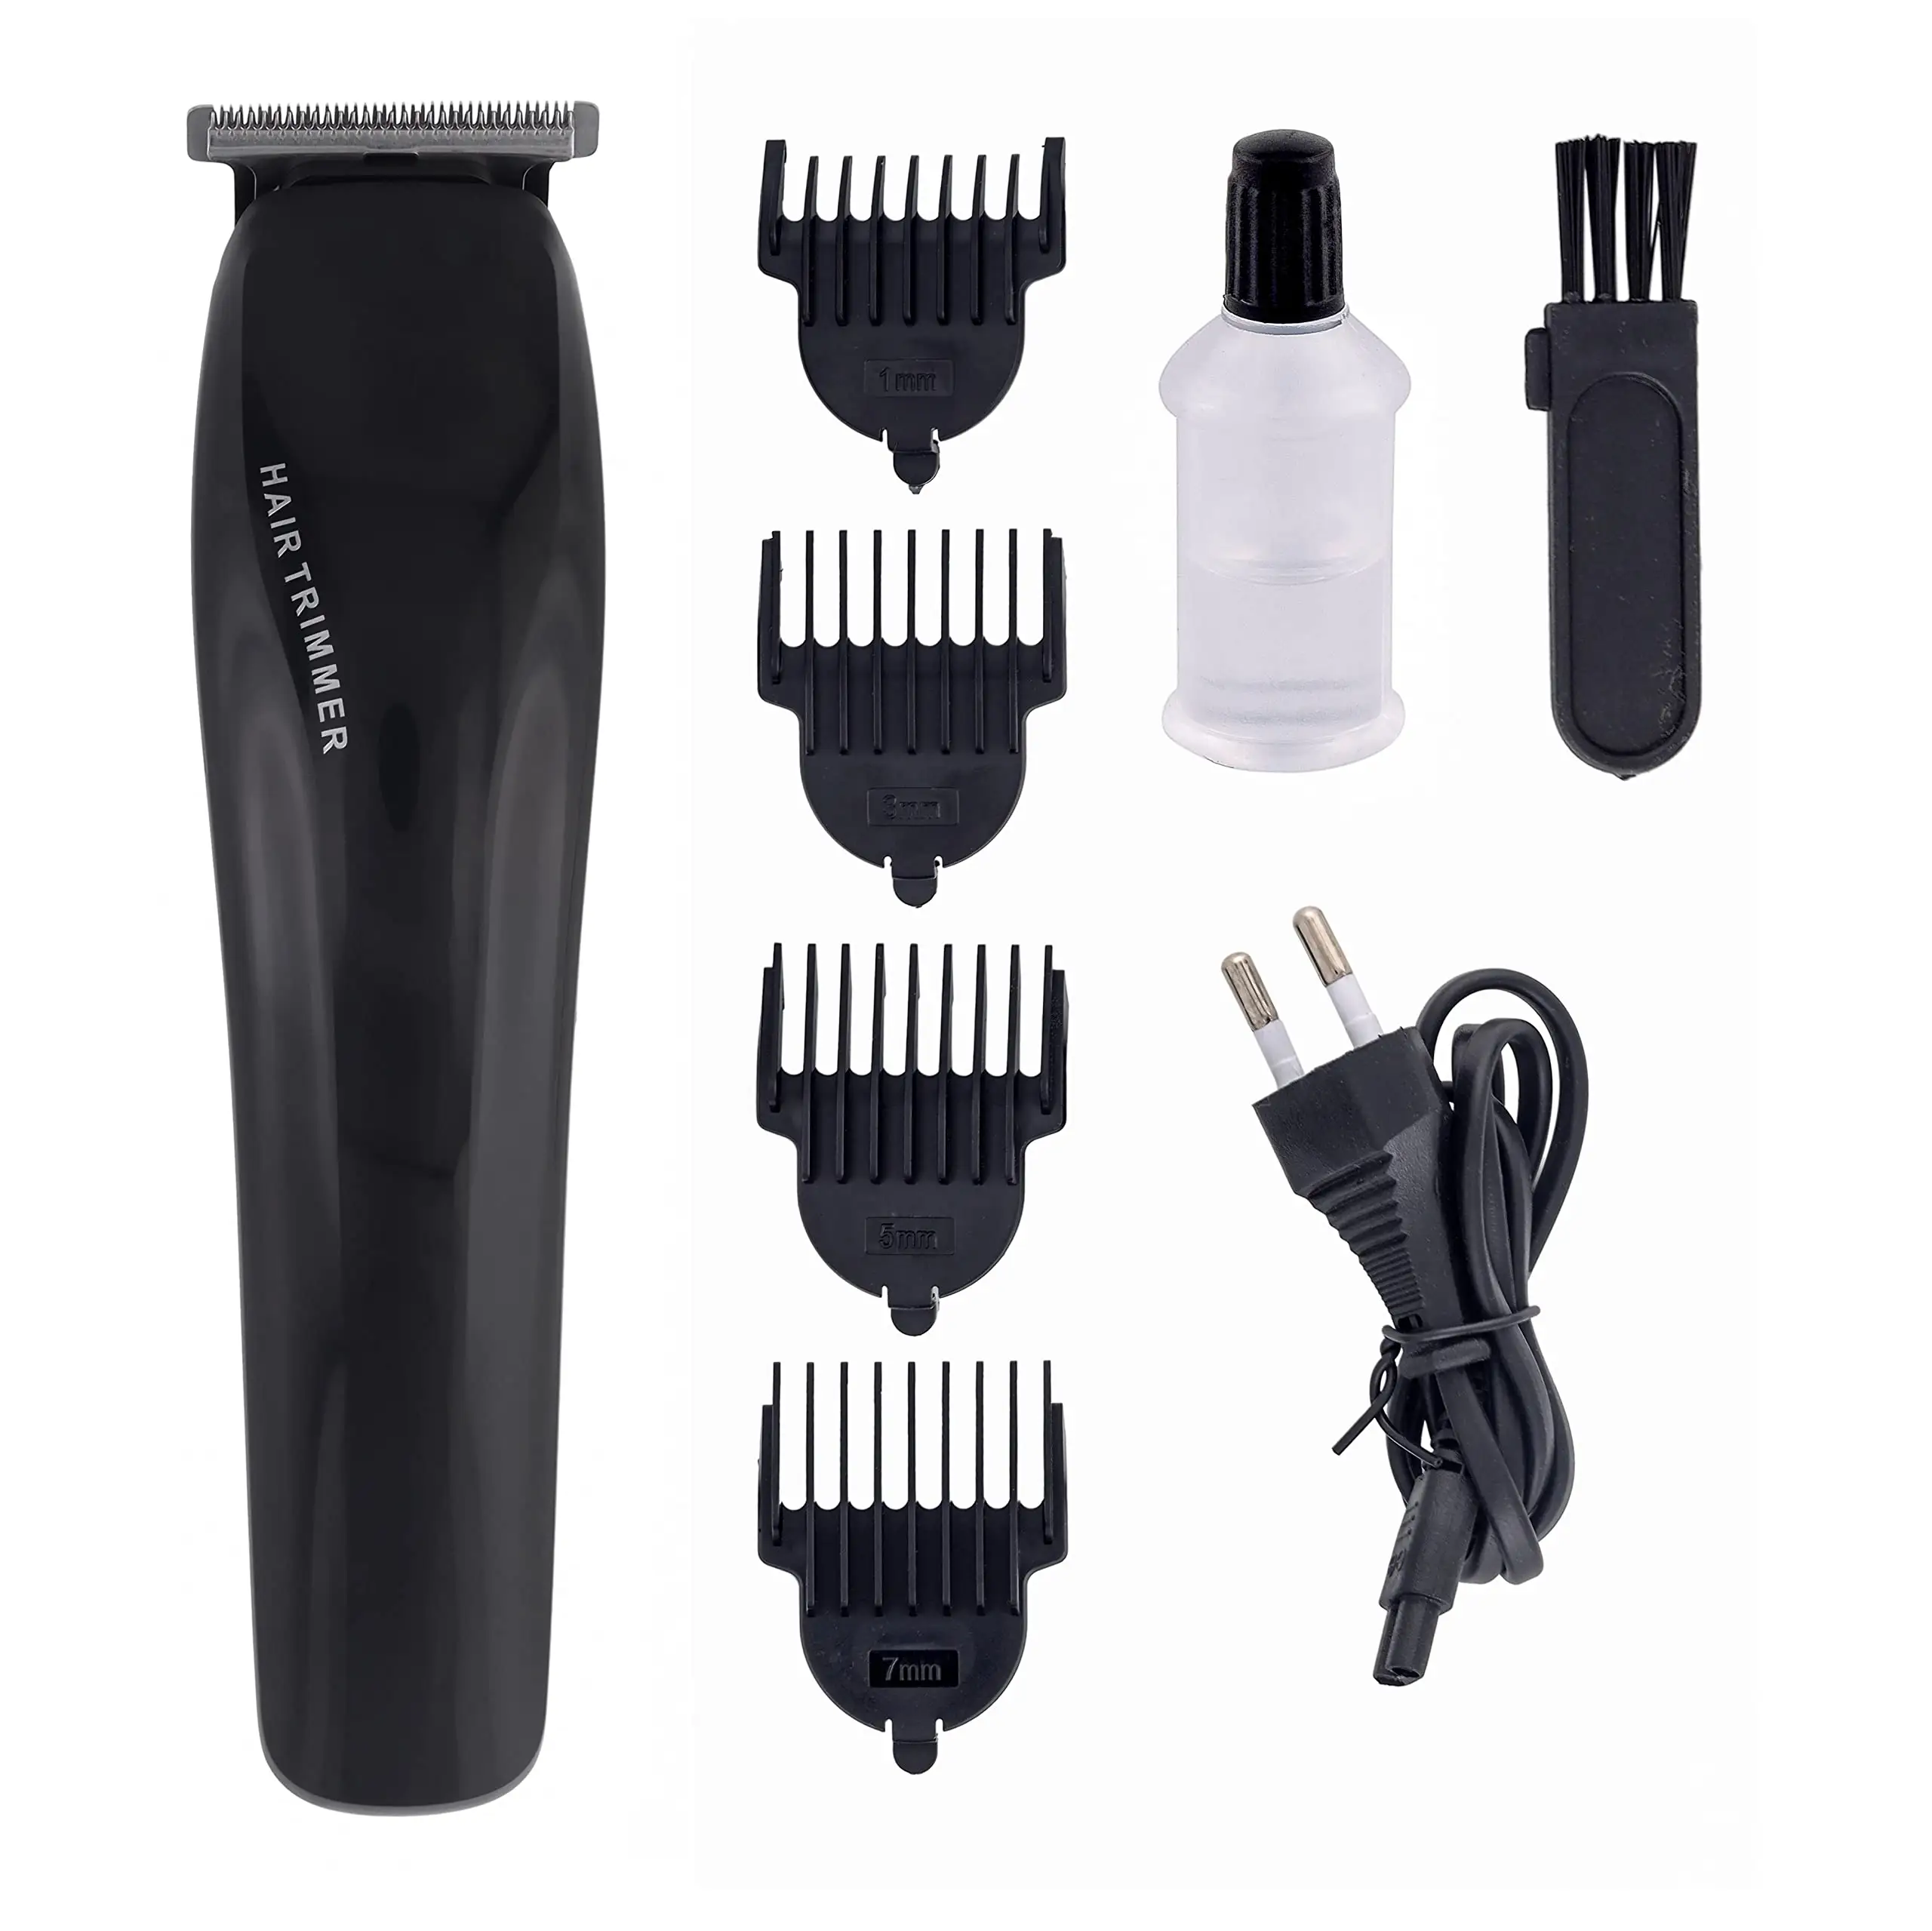 Herren-Pflege-Kit Nase Bart Körper-Haarschnitt multifunktionaler Haarschneider USB wiederaufladbarer Haarschneider-Set